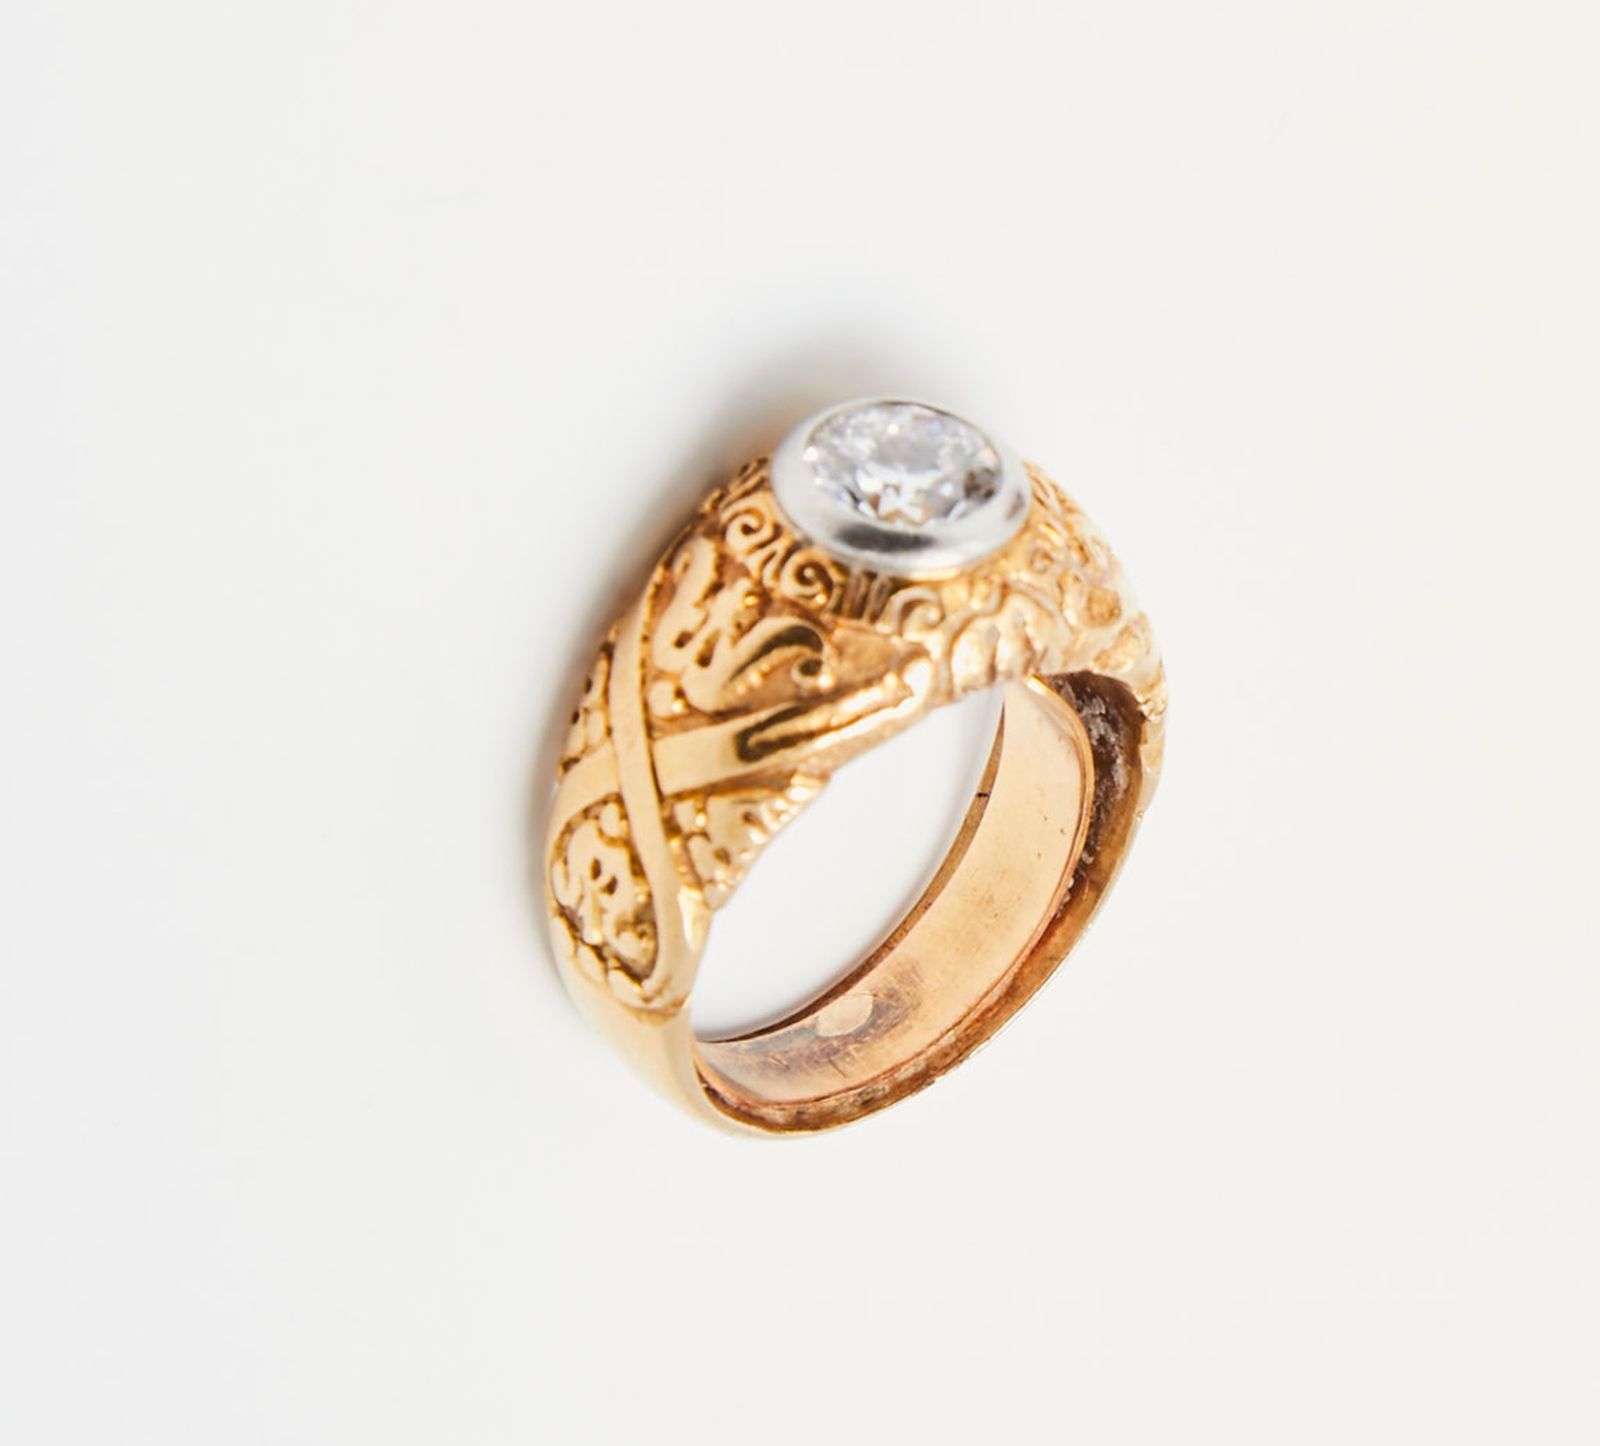 Null 336 黄金交错戒指，镶嵌着一颗白金钻石，约0.80克拉。
带项链
手指大小：49
12.5g